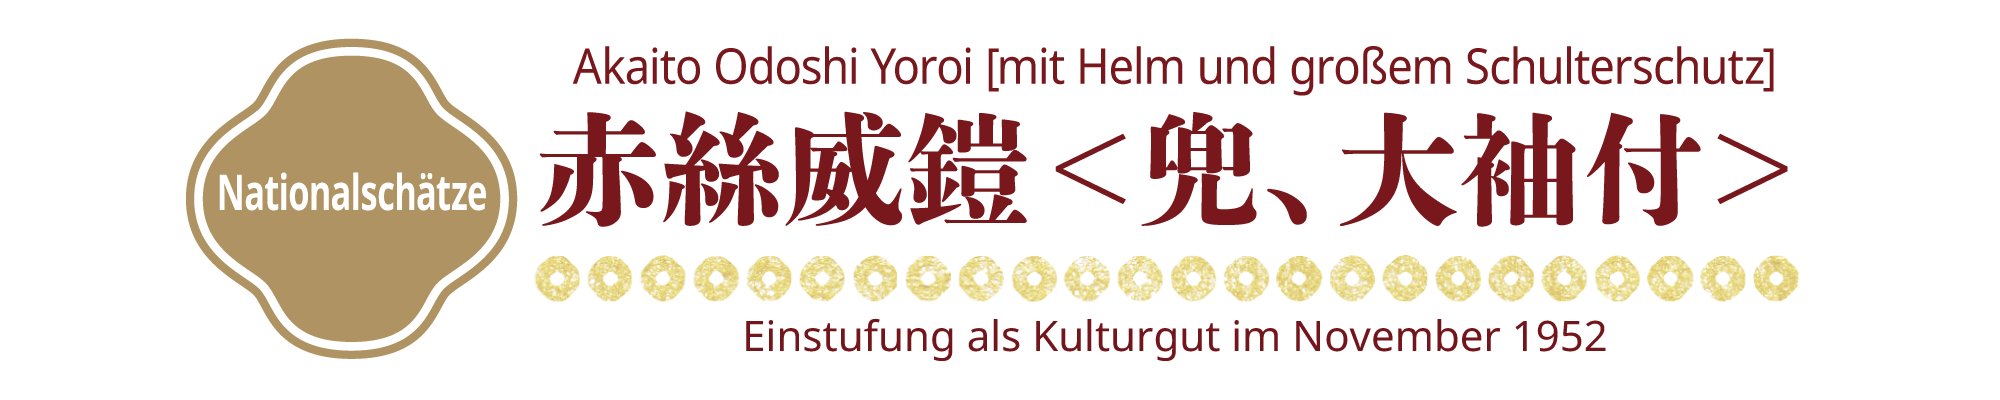 [Nationalschätze]Akaito Odoshi Yoroi [mit Helm und großem Schulterschutz], Einstufung als Kulturgut im November 1952